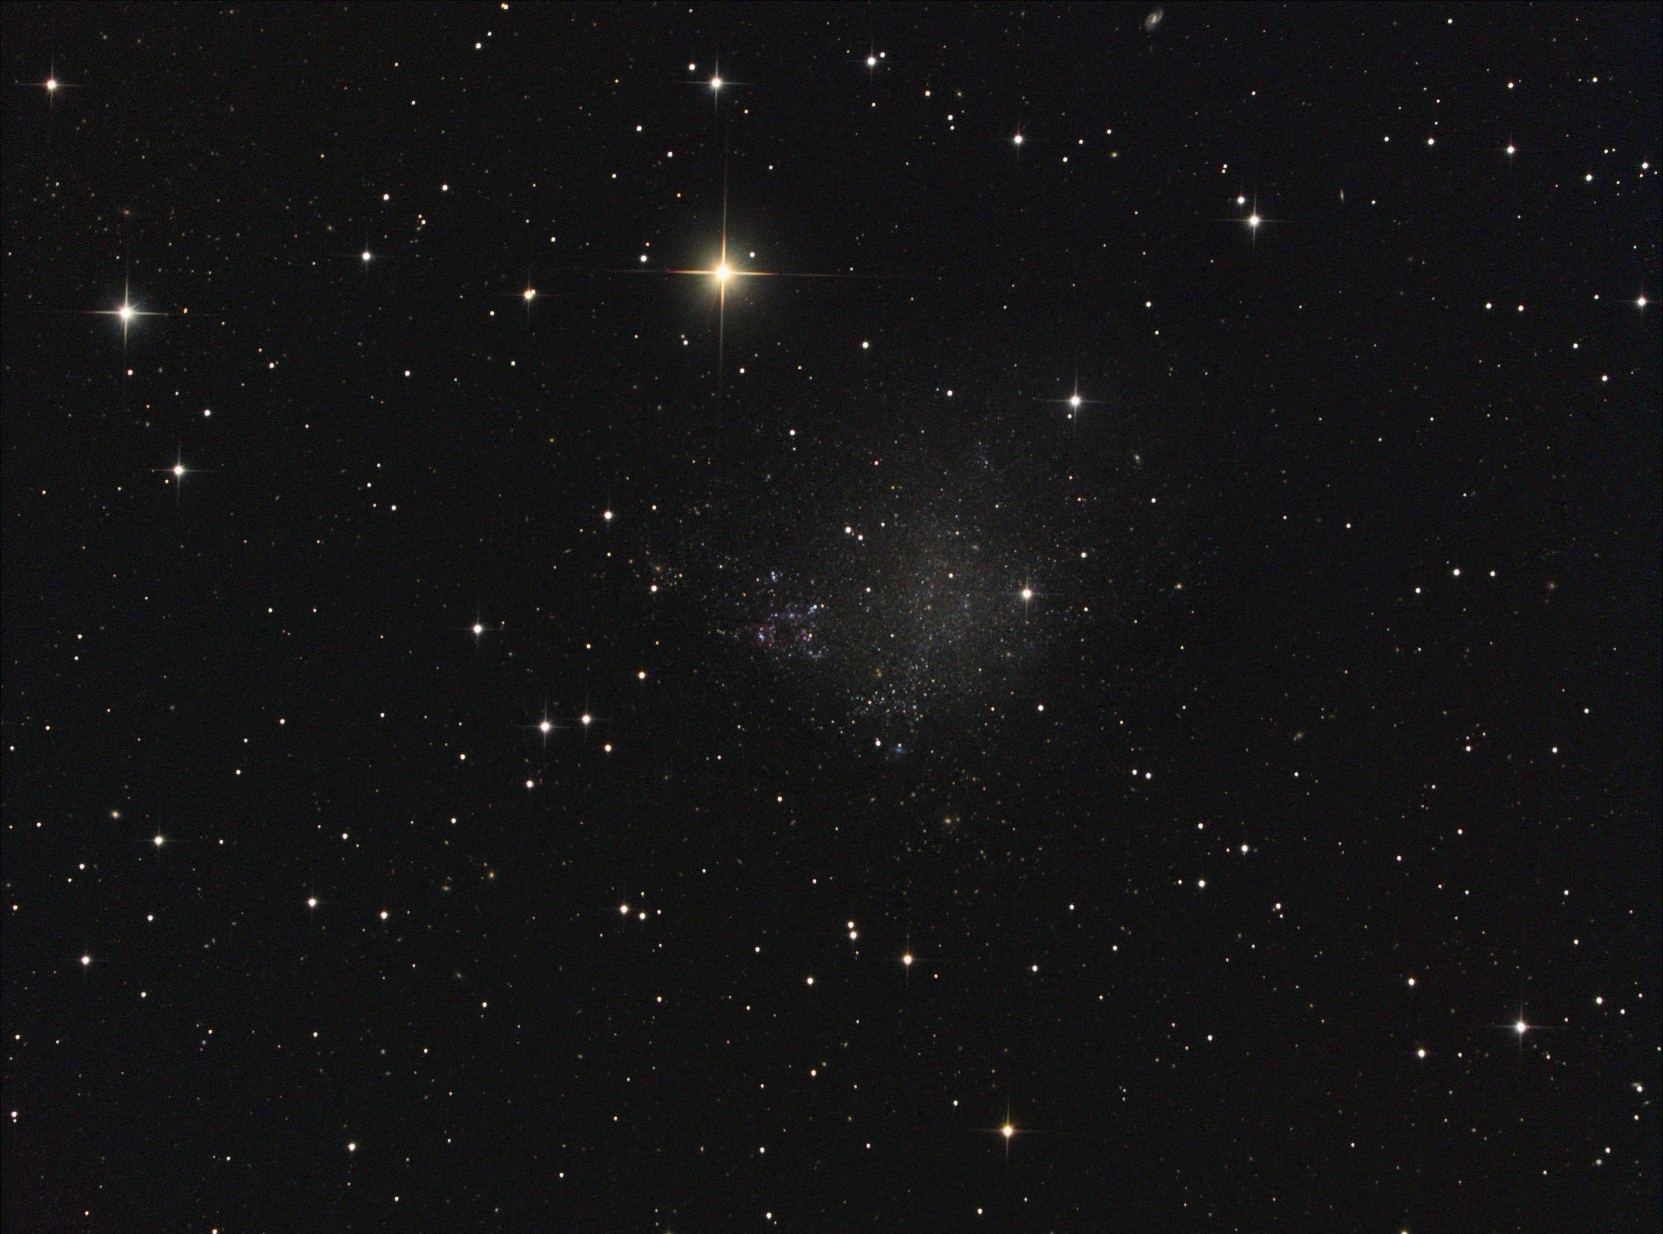 IC 1613